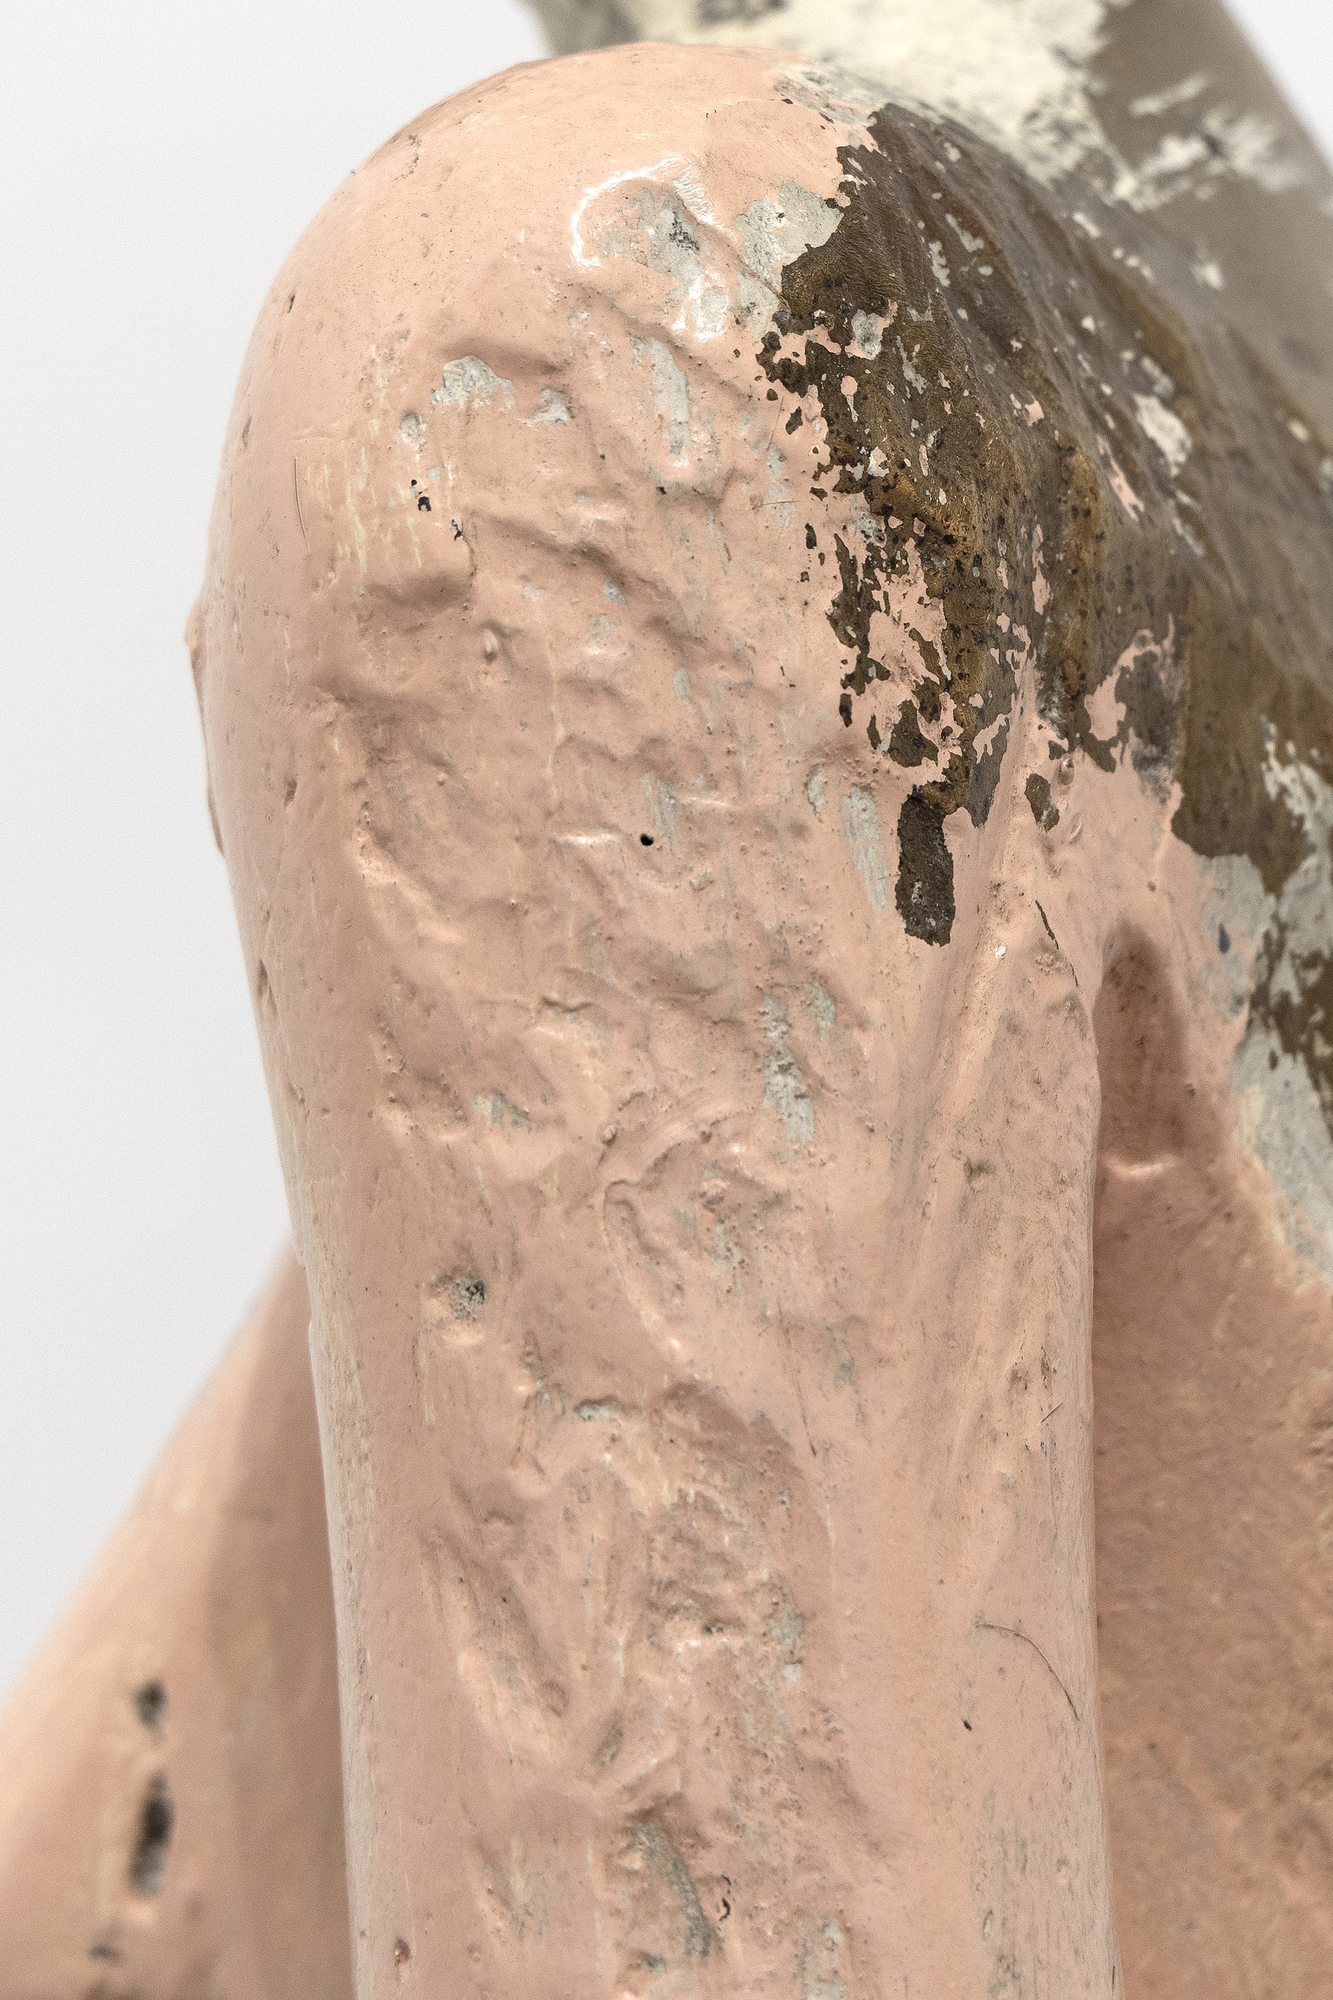 A finales de la década de 1990, Manuel Neri comenzó a transformar numerosas esculturas de escayola en bronce, volviendo con frecuencia a obras anteriores para producir nuevas versiones imaginadas de cada pieza. Estas series, casi indistinguibles en forma y superficie, exploran el impacto de diferentes combinaciones de color y marcas que implican diversas acciones, como incisiones, cepillados, raspados o capas de materiales. Experimentando con distintas técnicas de marcado, Neri pudo explorar la interacción entre forma, color, textura y luz. En el contexto de la Figura de pie n.º 3, Neri limitó su paleta a un esquema cromático análogo, diluyendo la pintura para crear sutiles gradaciones que realzan el exterior elegante y refinado de la escultura.